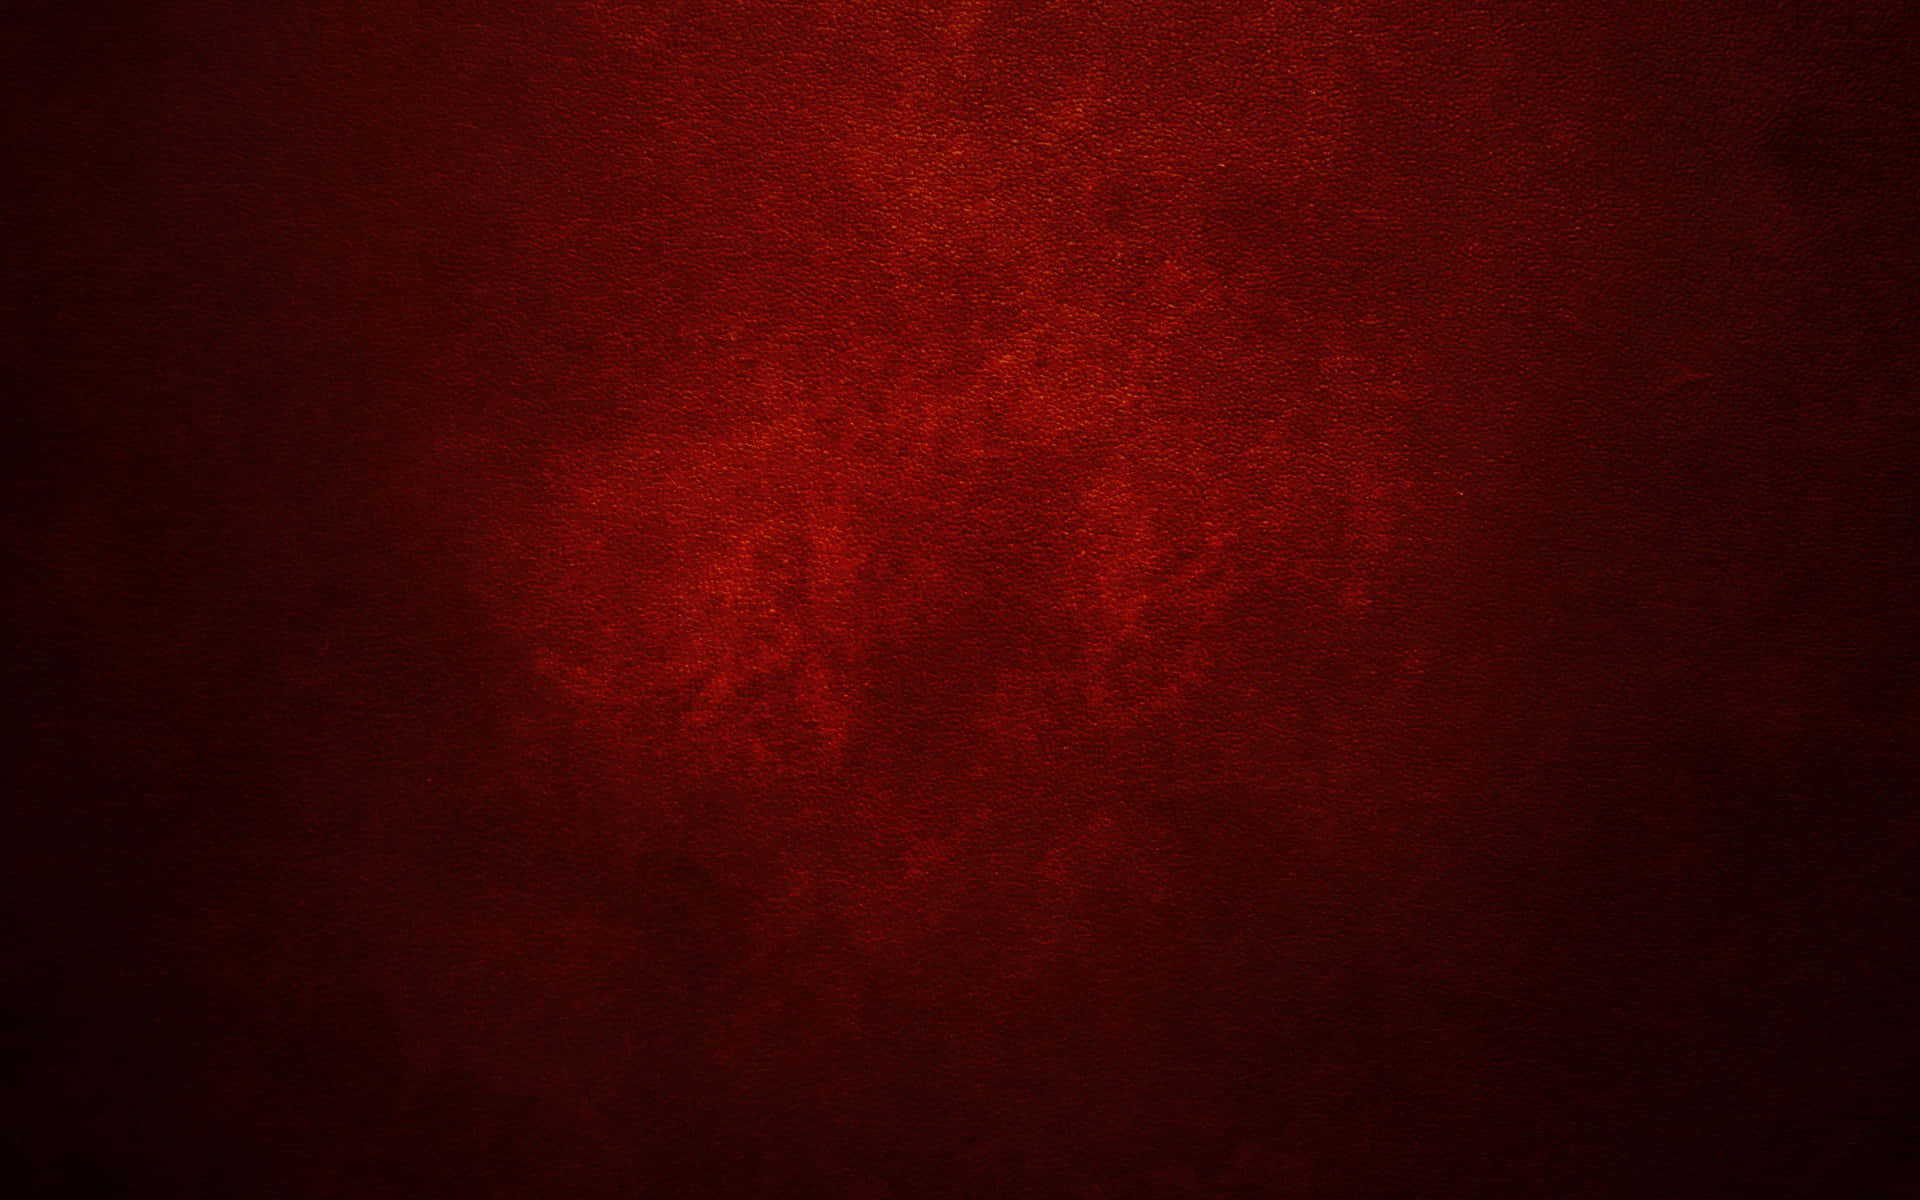 Sfondodi Colore Rosso Scuro Con Una Texture Bianca Maculata.